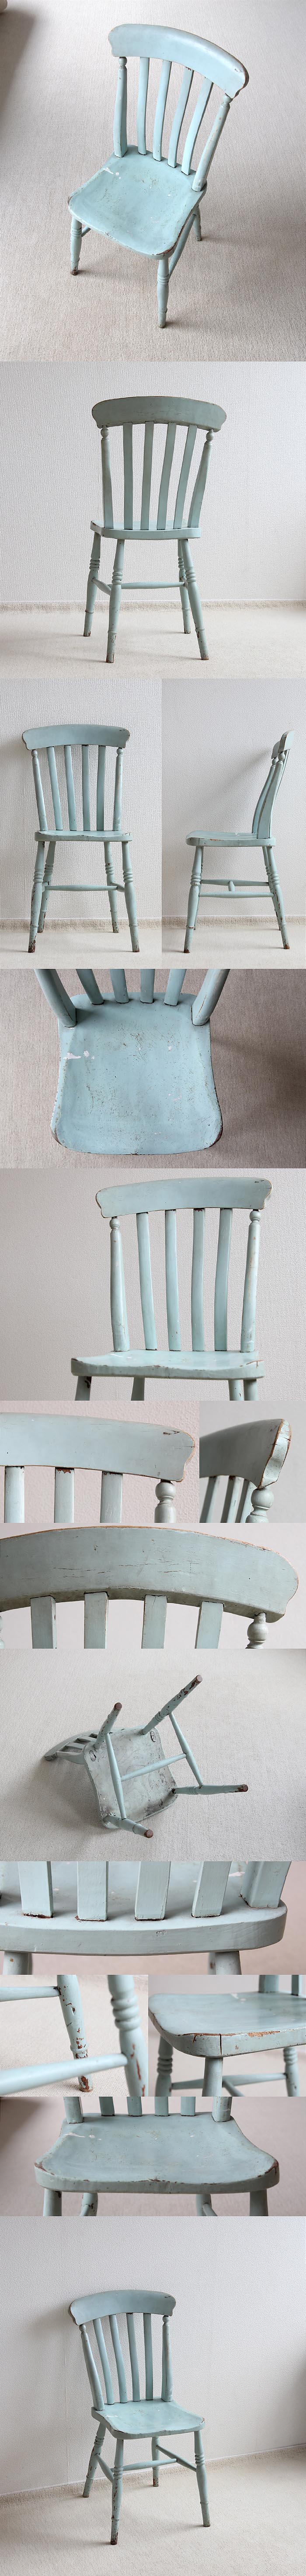 イギリス アンティーク ペイントキッチンチェア 木製椅子 古木 英国 家具「ラスバックチェア」V-465